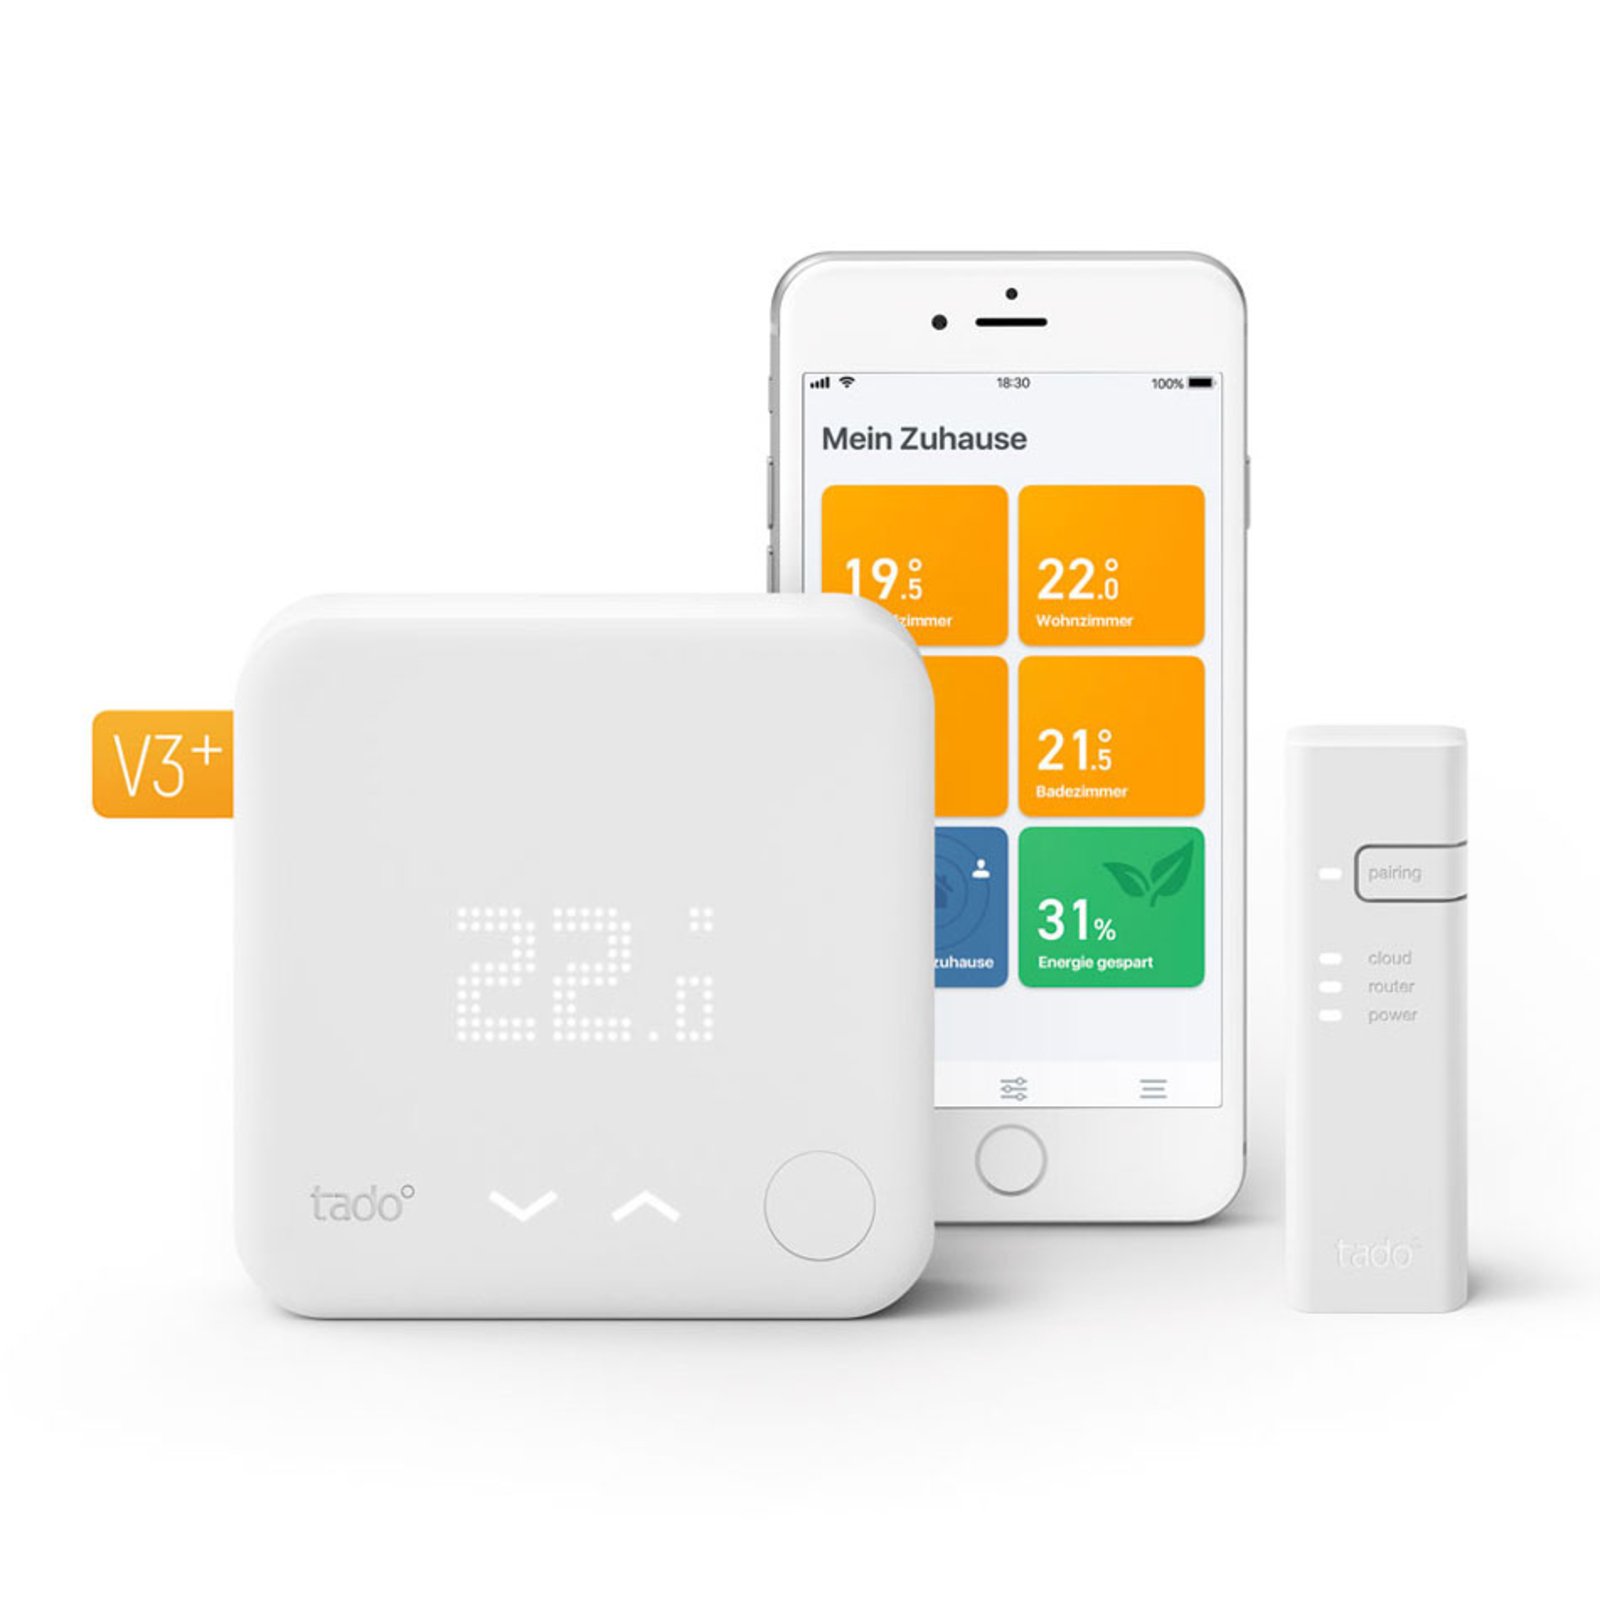 tado° Smart Thermostat Start Kit V3+, biały